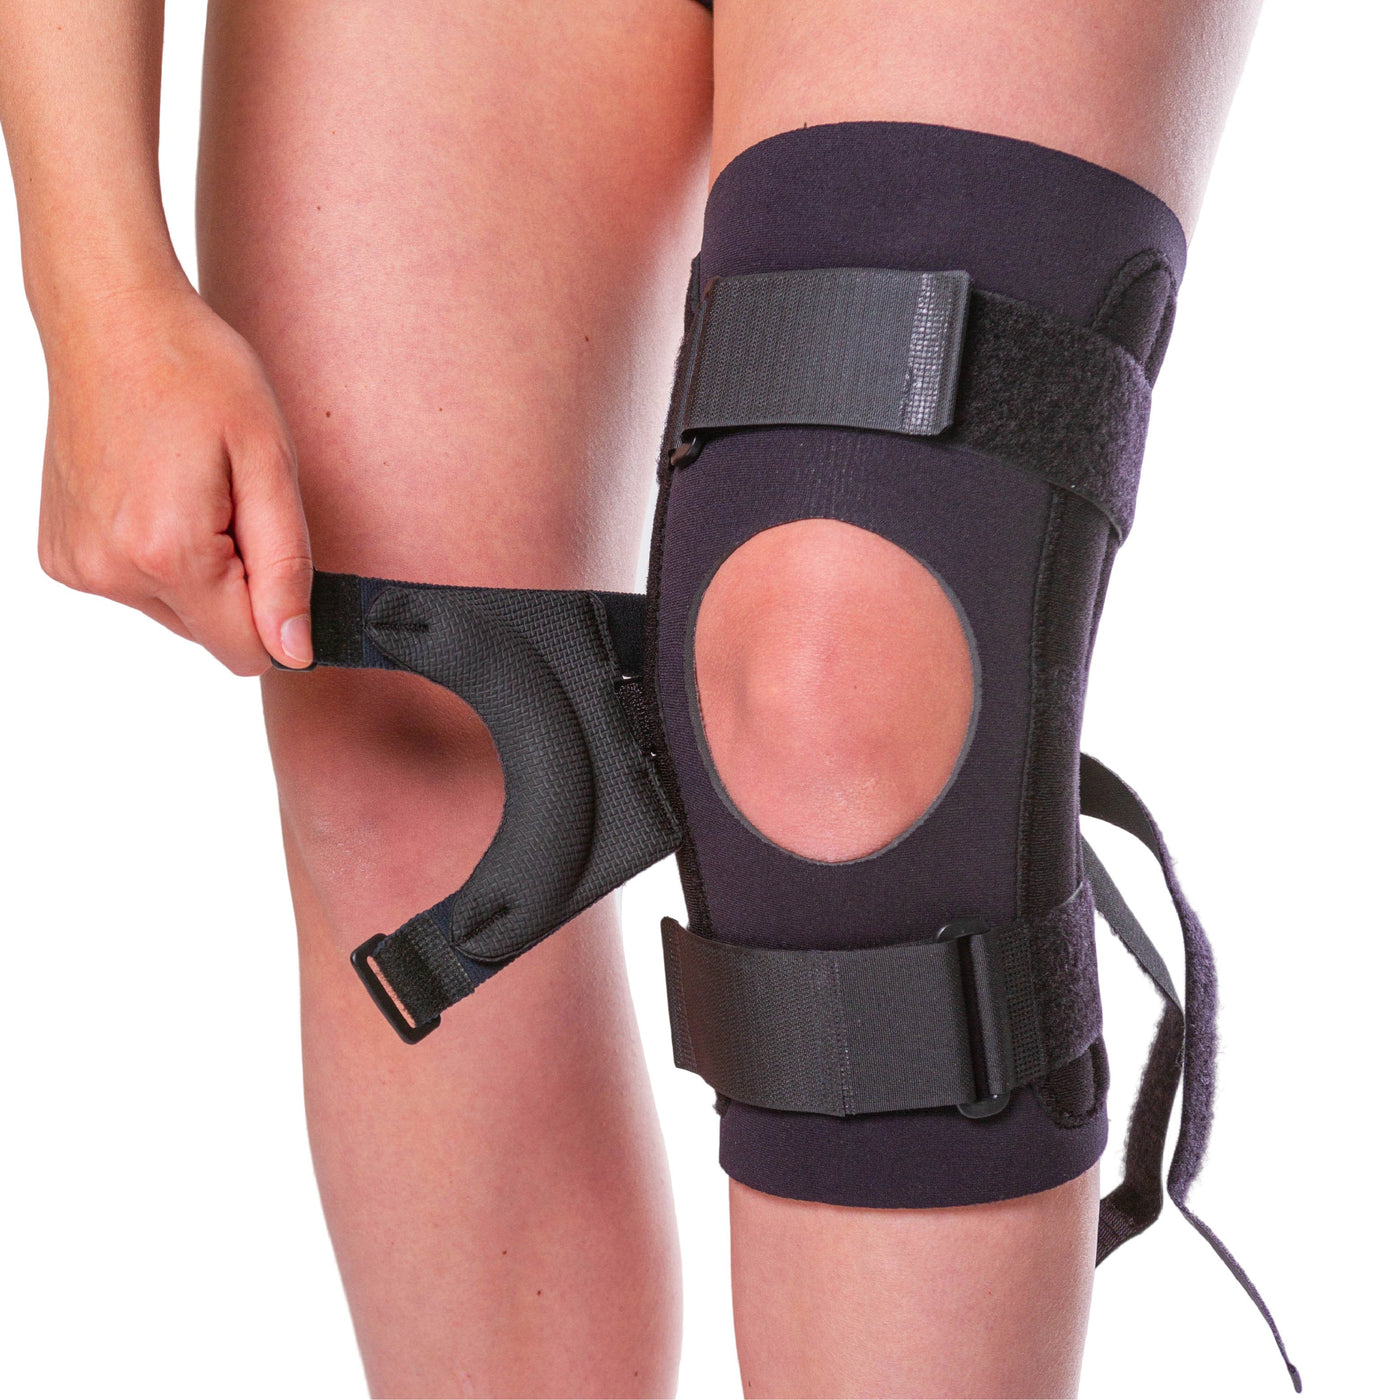 https://www.braceability.com/cdn/shop/products/03k06-j-patella-knee-brace_1400x.jpg?v=1618430331